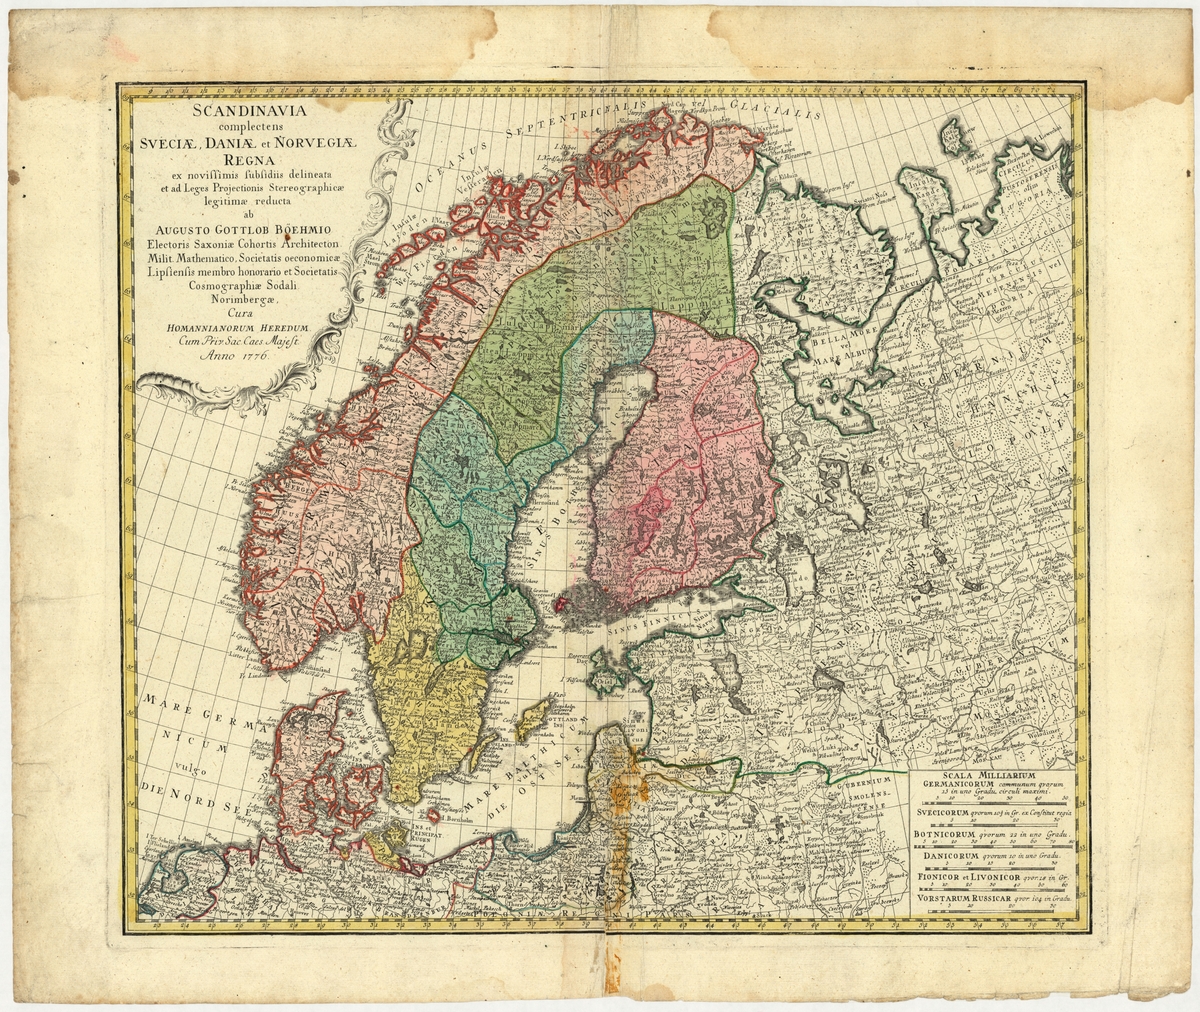 Karta över Skandinavien, med Sverige, Danmark och Norge, graverad, med text på latin, från år 1776.